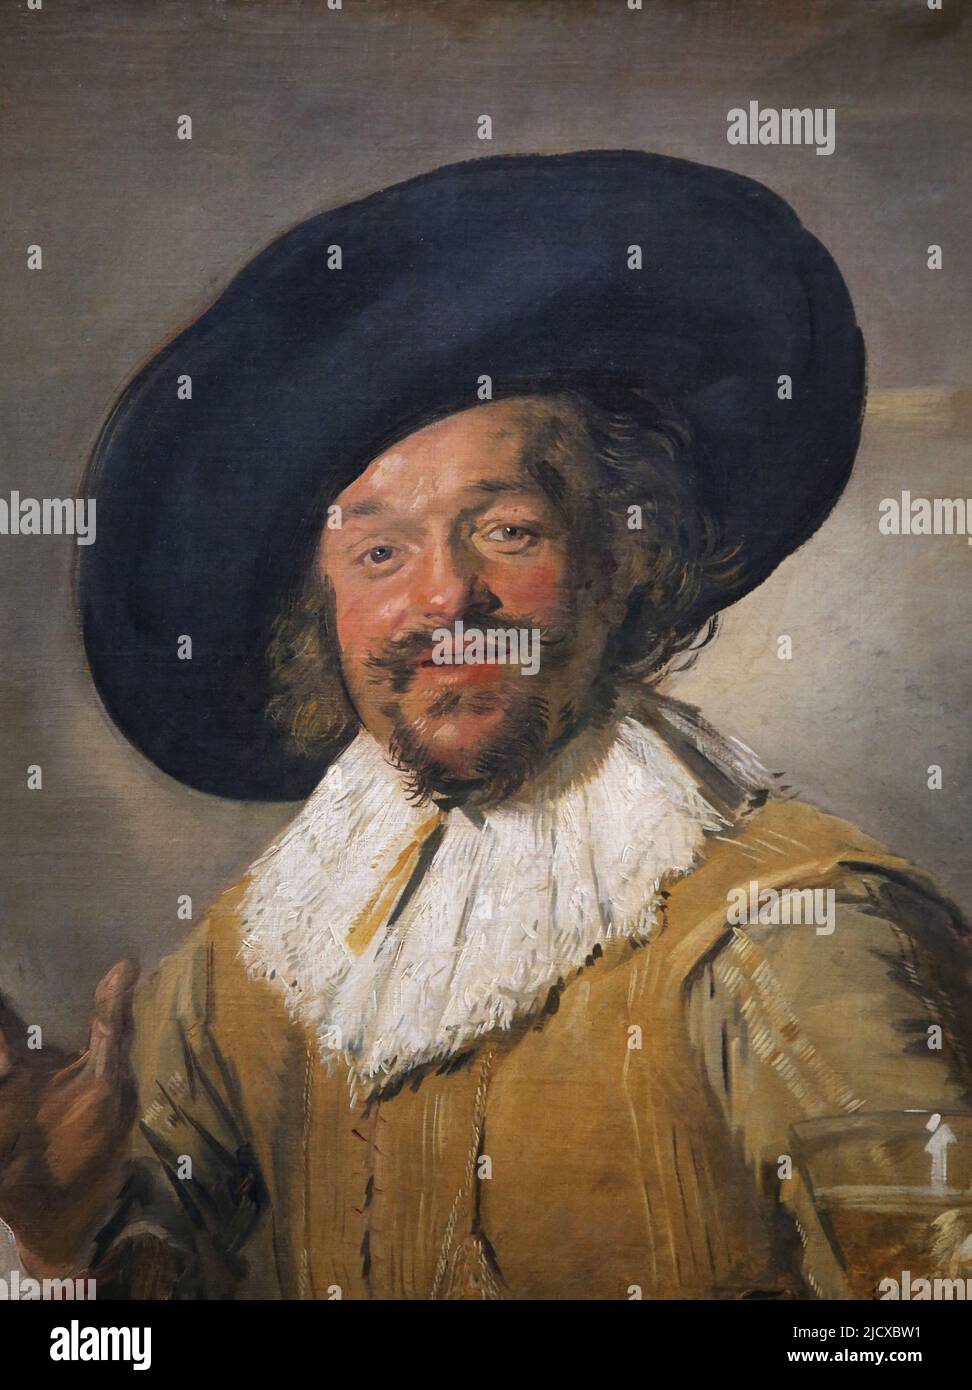 Ein Milizionär, der einen Bekemeyer hält, der von Frans Hals (c. 1582-1666). Öl auf Leinwand, c. 1628-1630. Rijksmuseum. Amsterdam. Netto Stockfoto